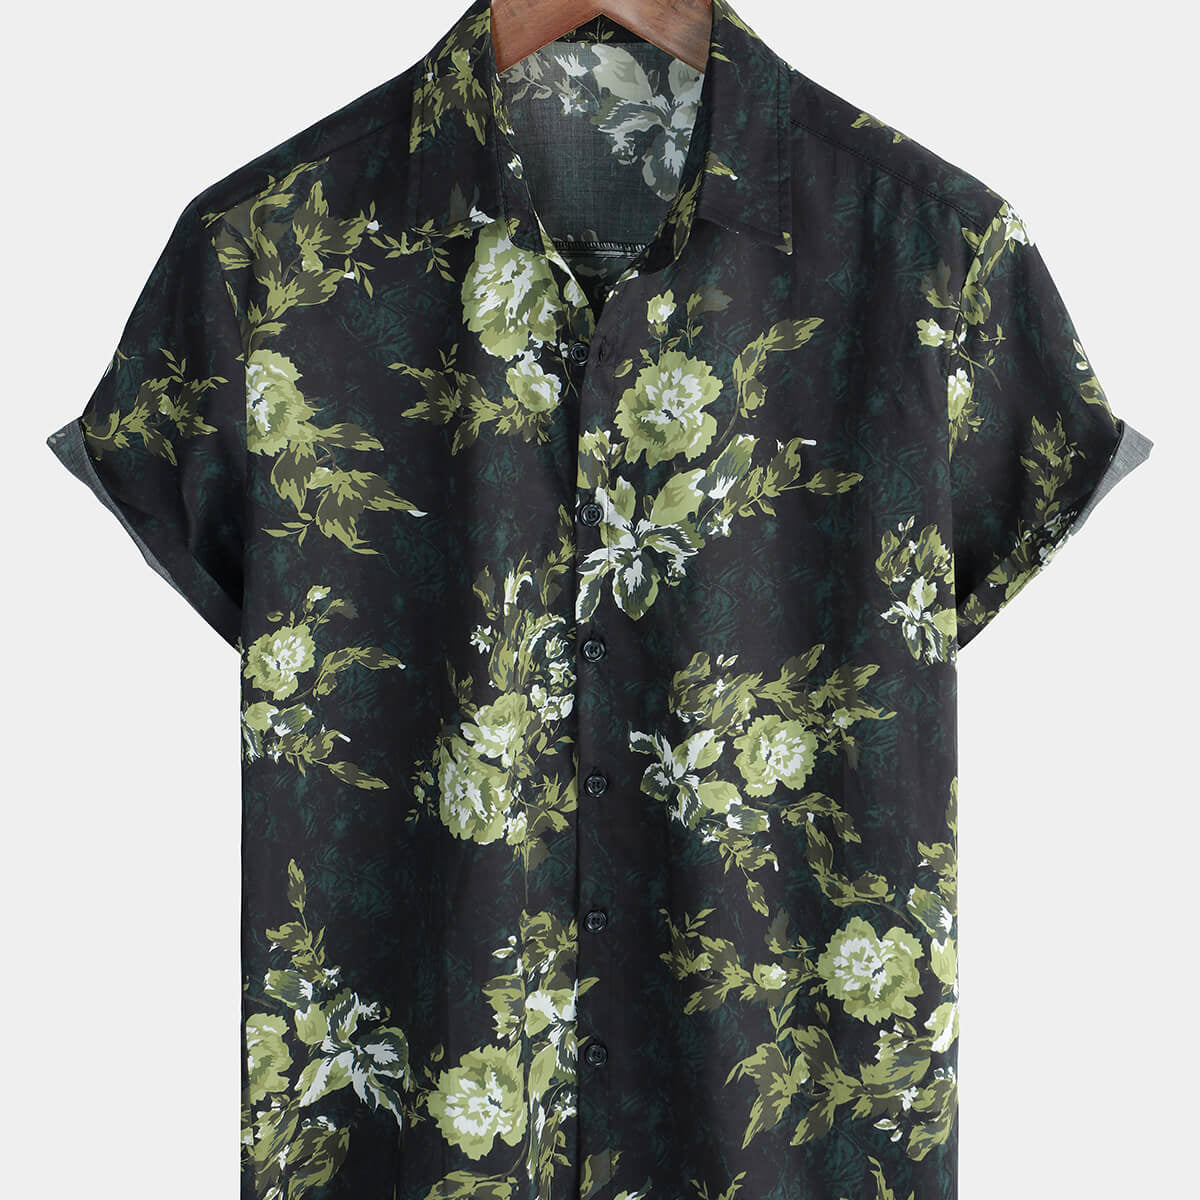 Men's Green Hawaiian Floral Button Up Cotton Cool Short Sleeve Shirt